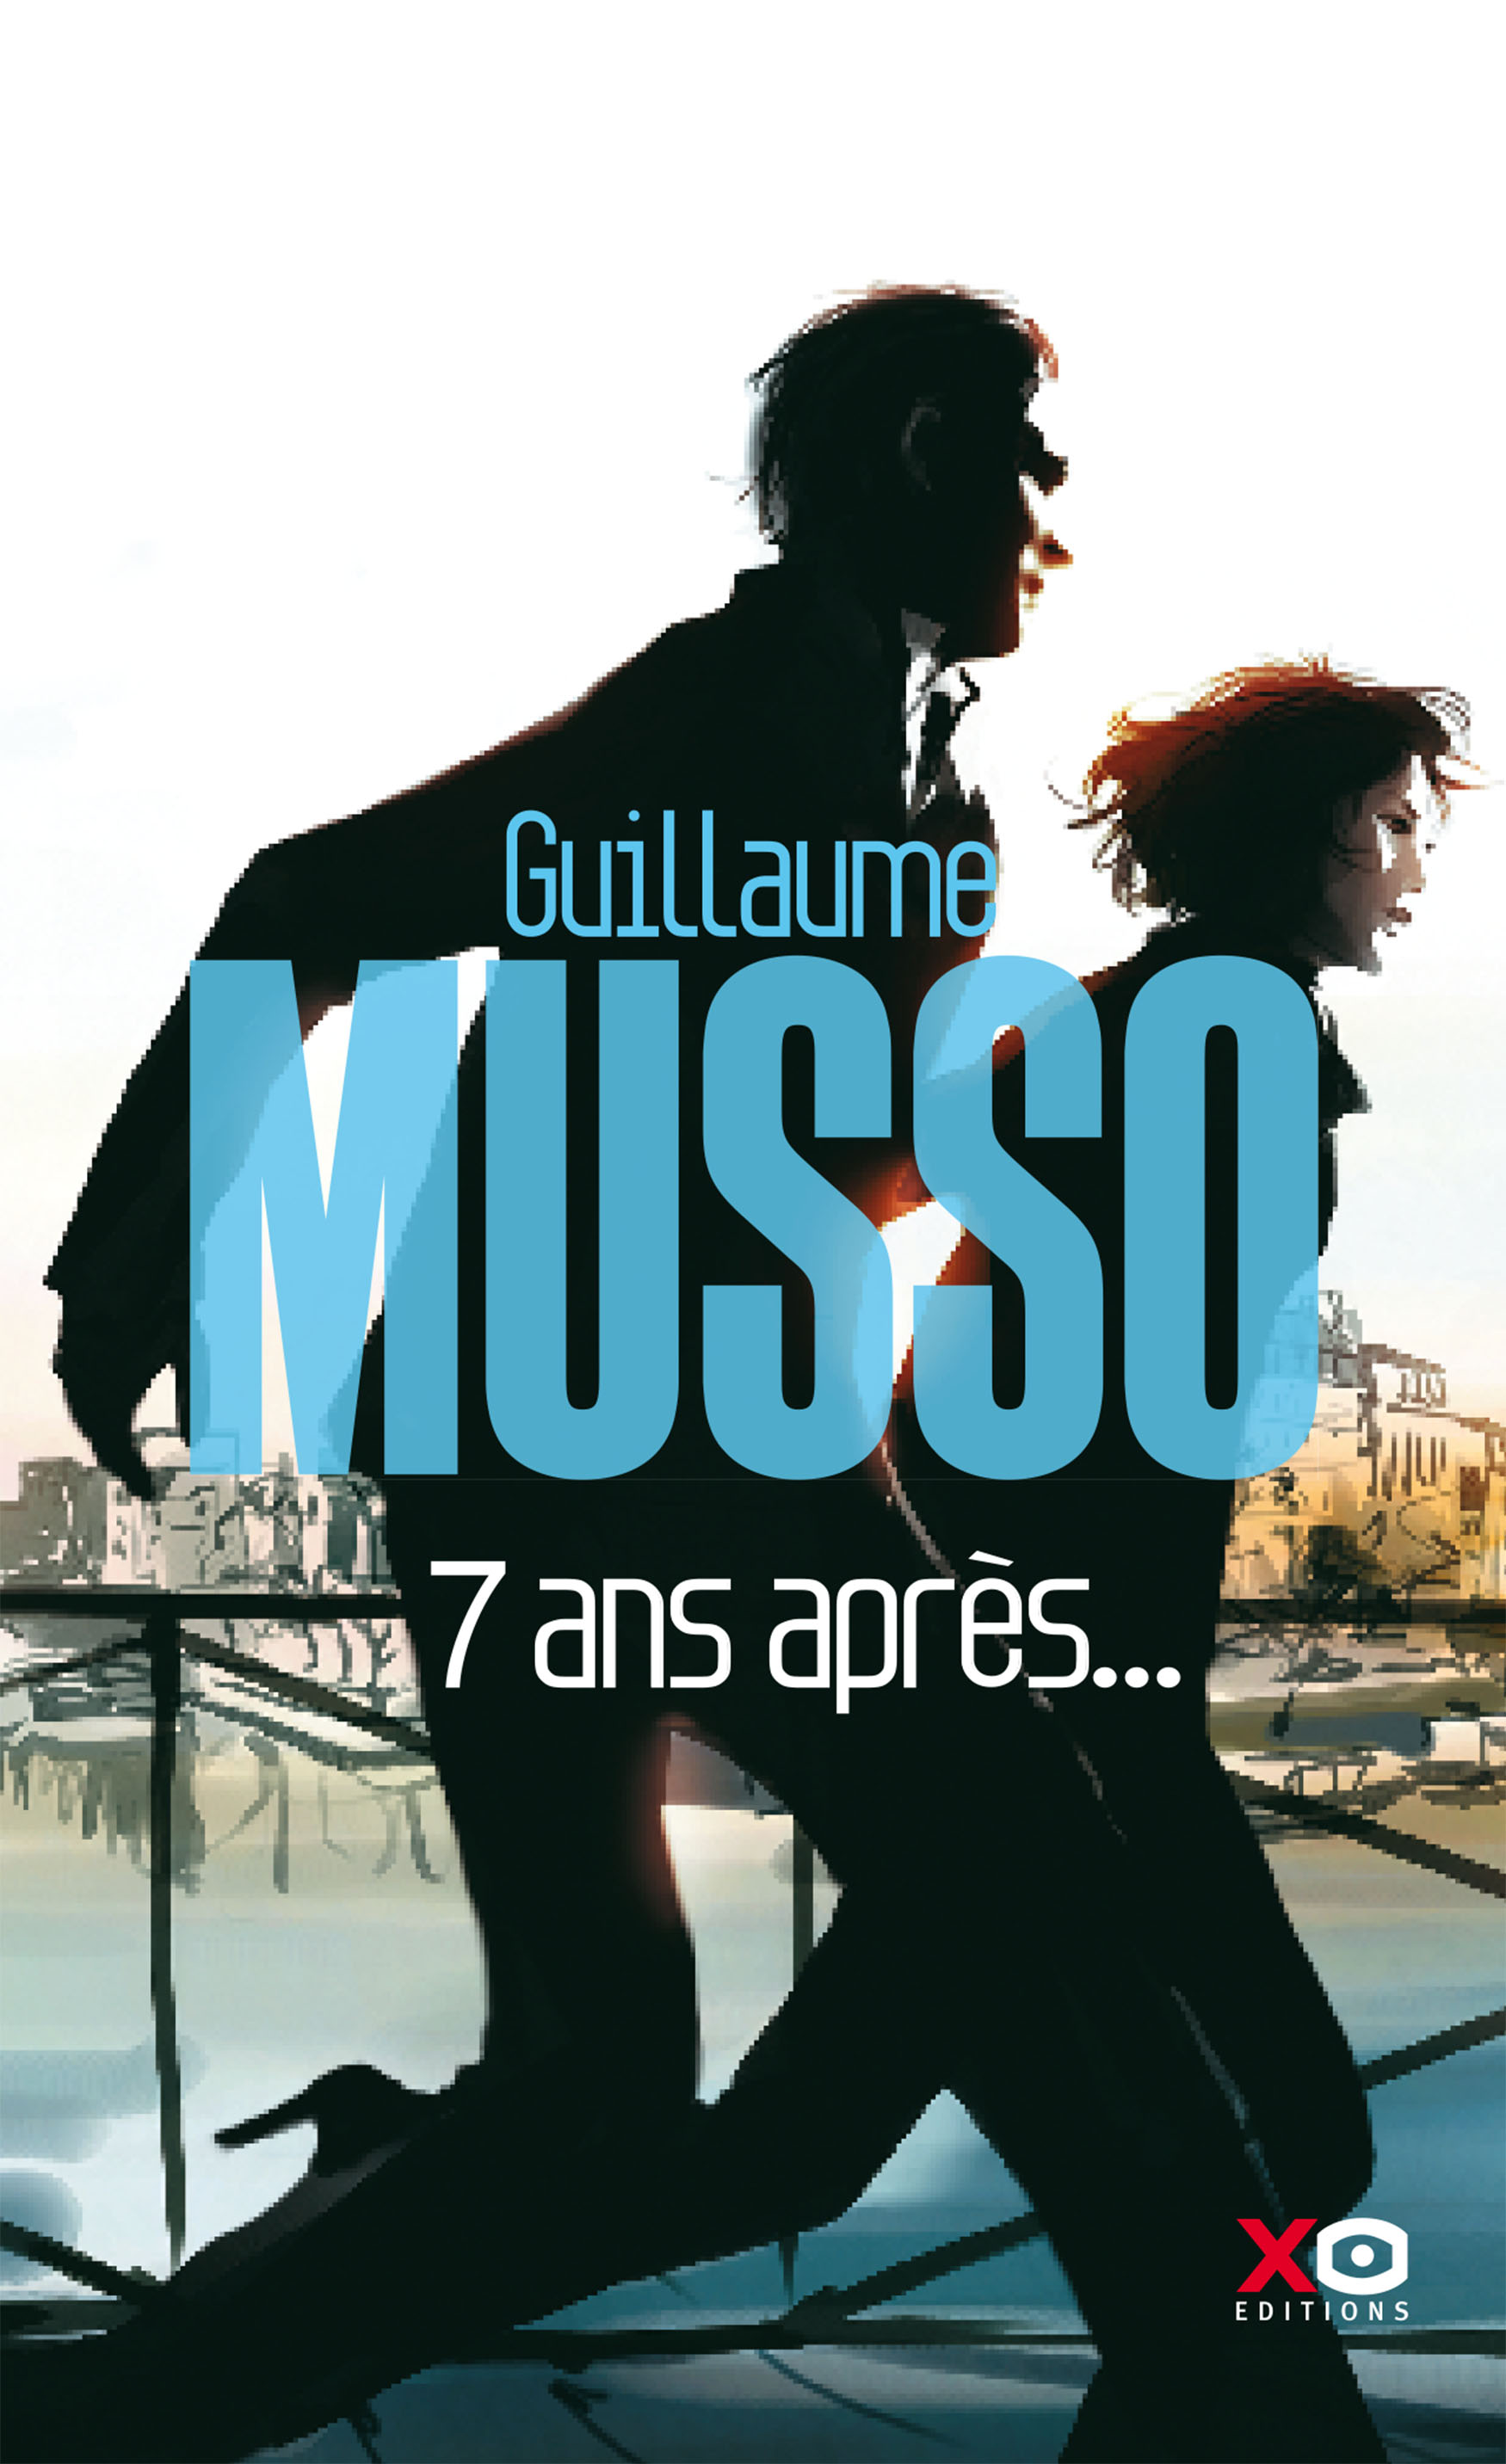 Guillaume Musso est encore une fois l'auteur préféré des français